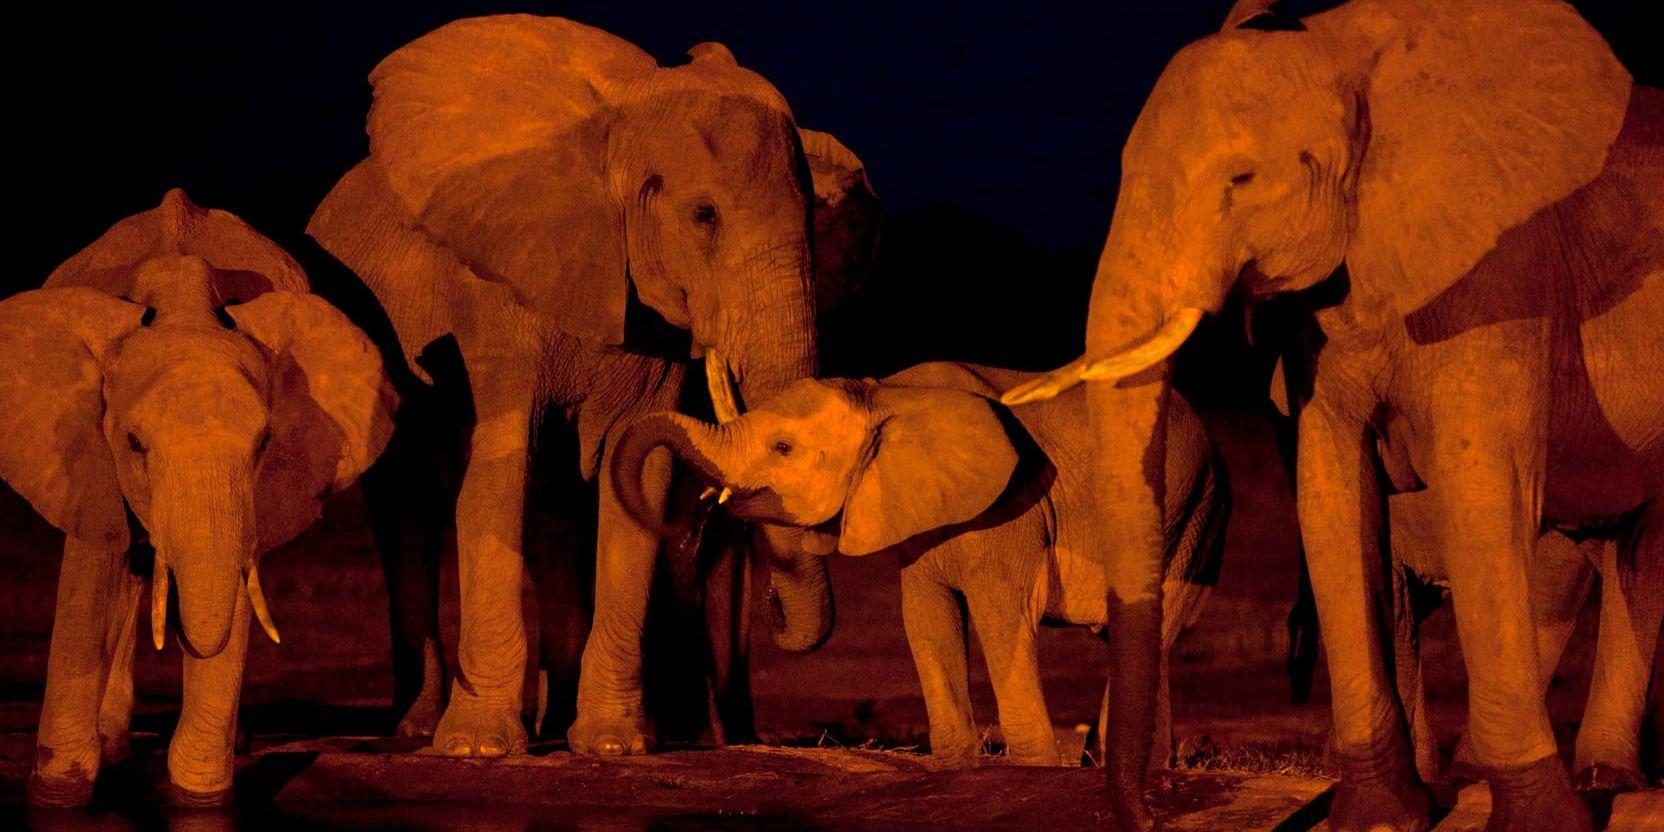 Elefanter utbyter information med mullrande läten. Precis som människor väntar de på sin tur när de konverserar med varandra. Djuren på bilden hör hemma i nationalparken Tsavo i Kenya.